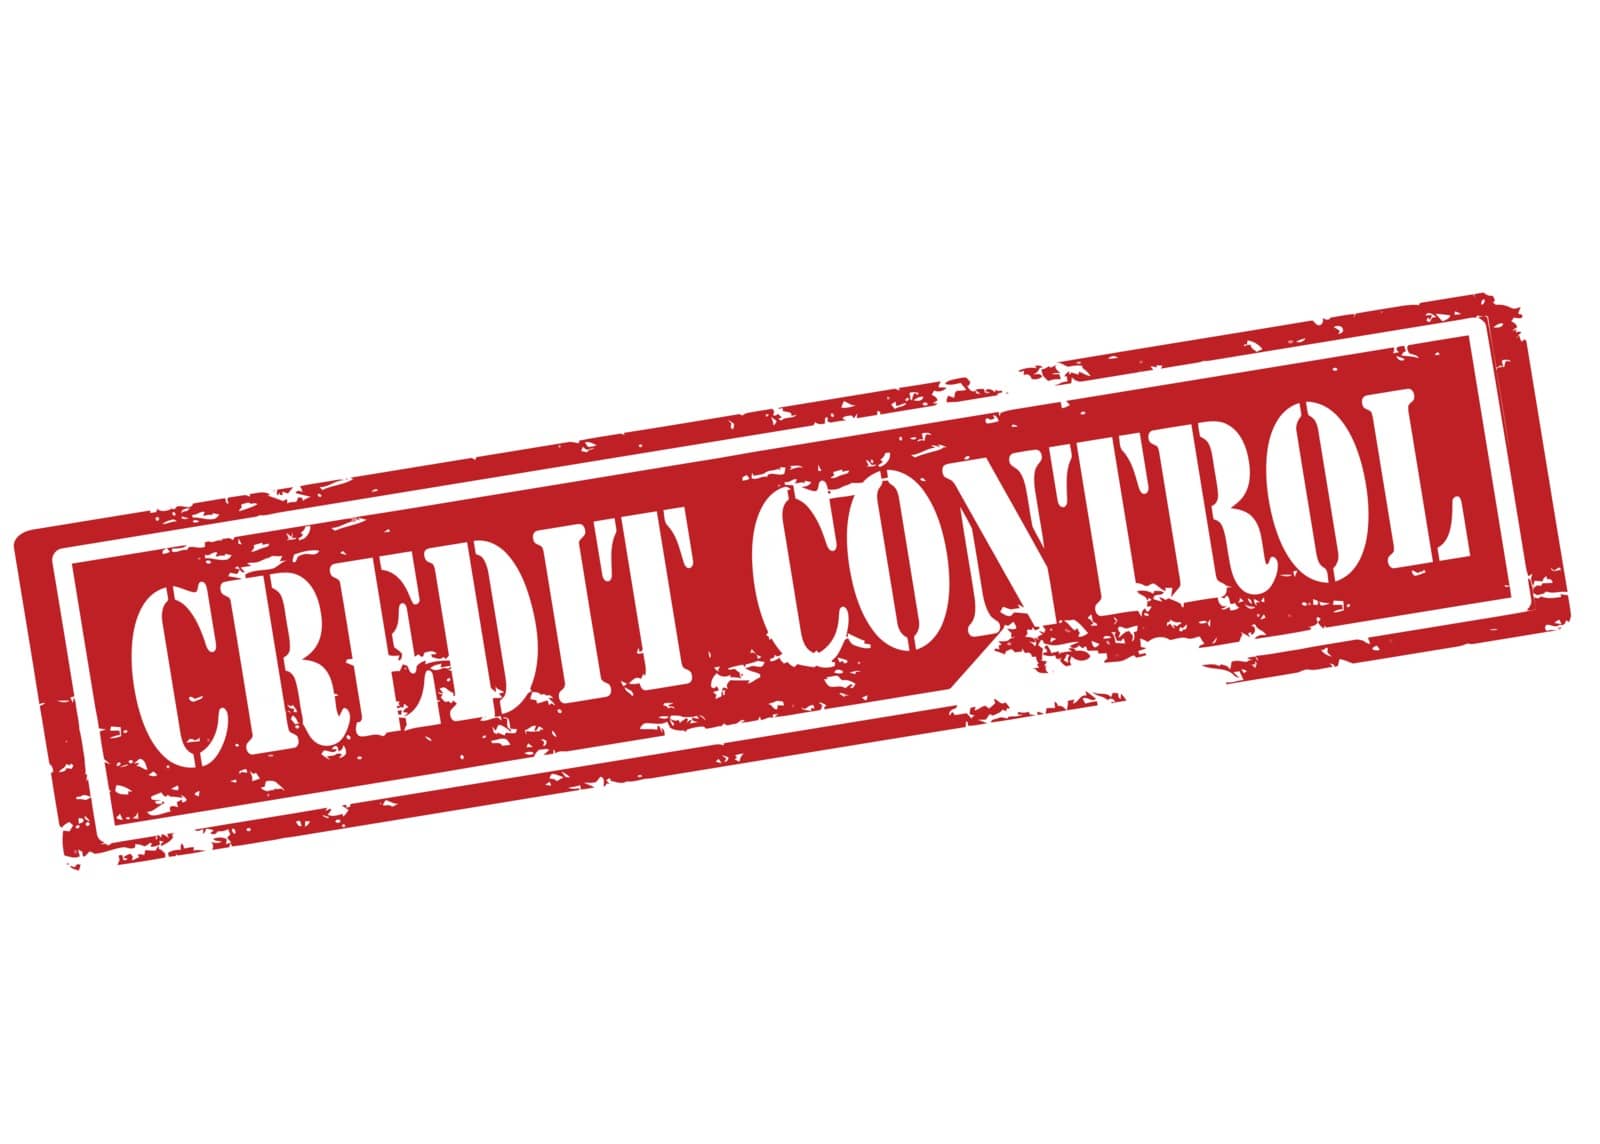 Credit control by carmenbobo